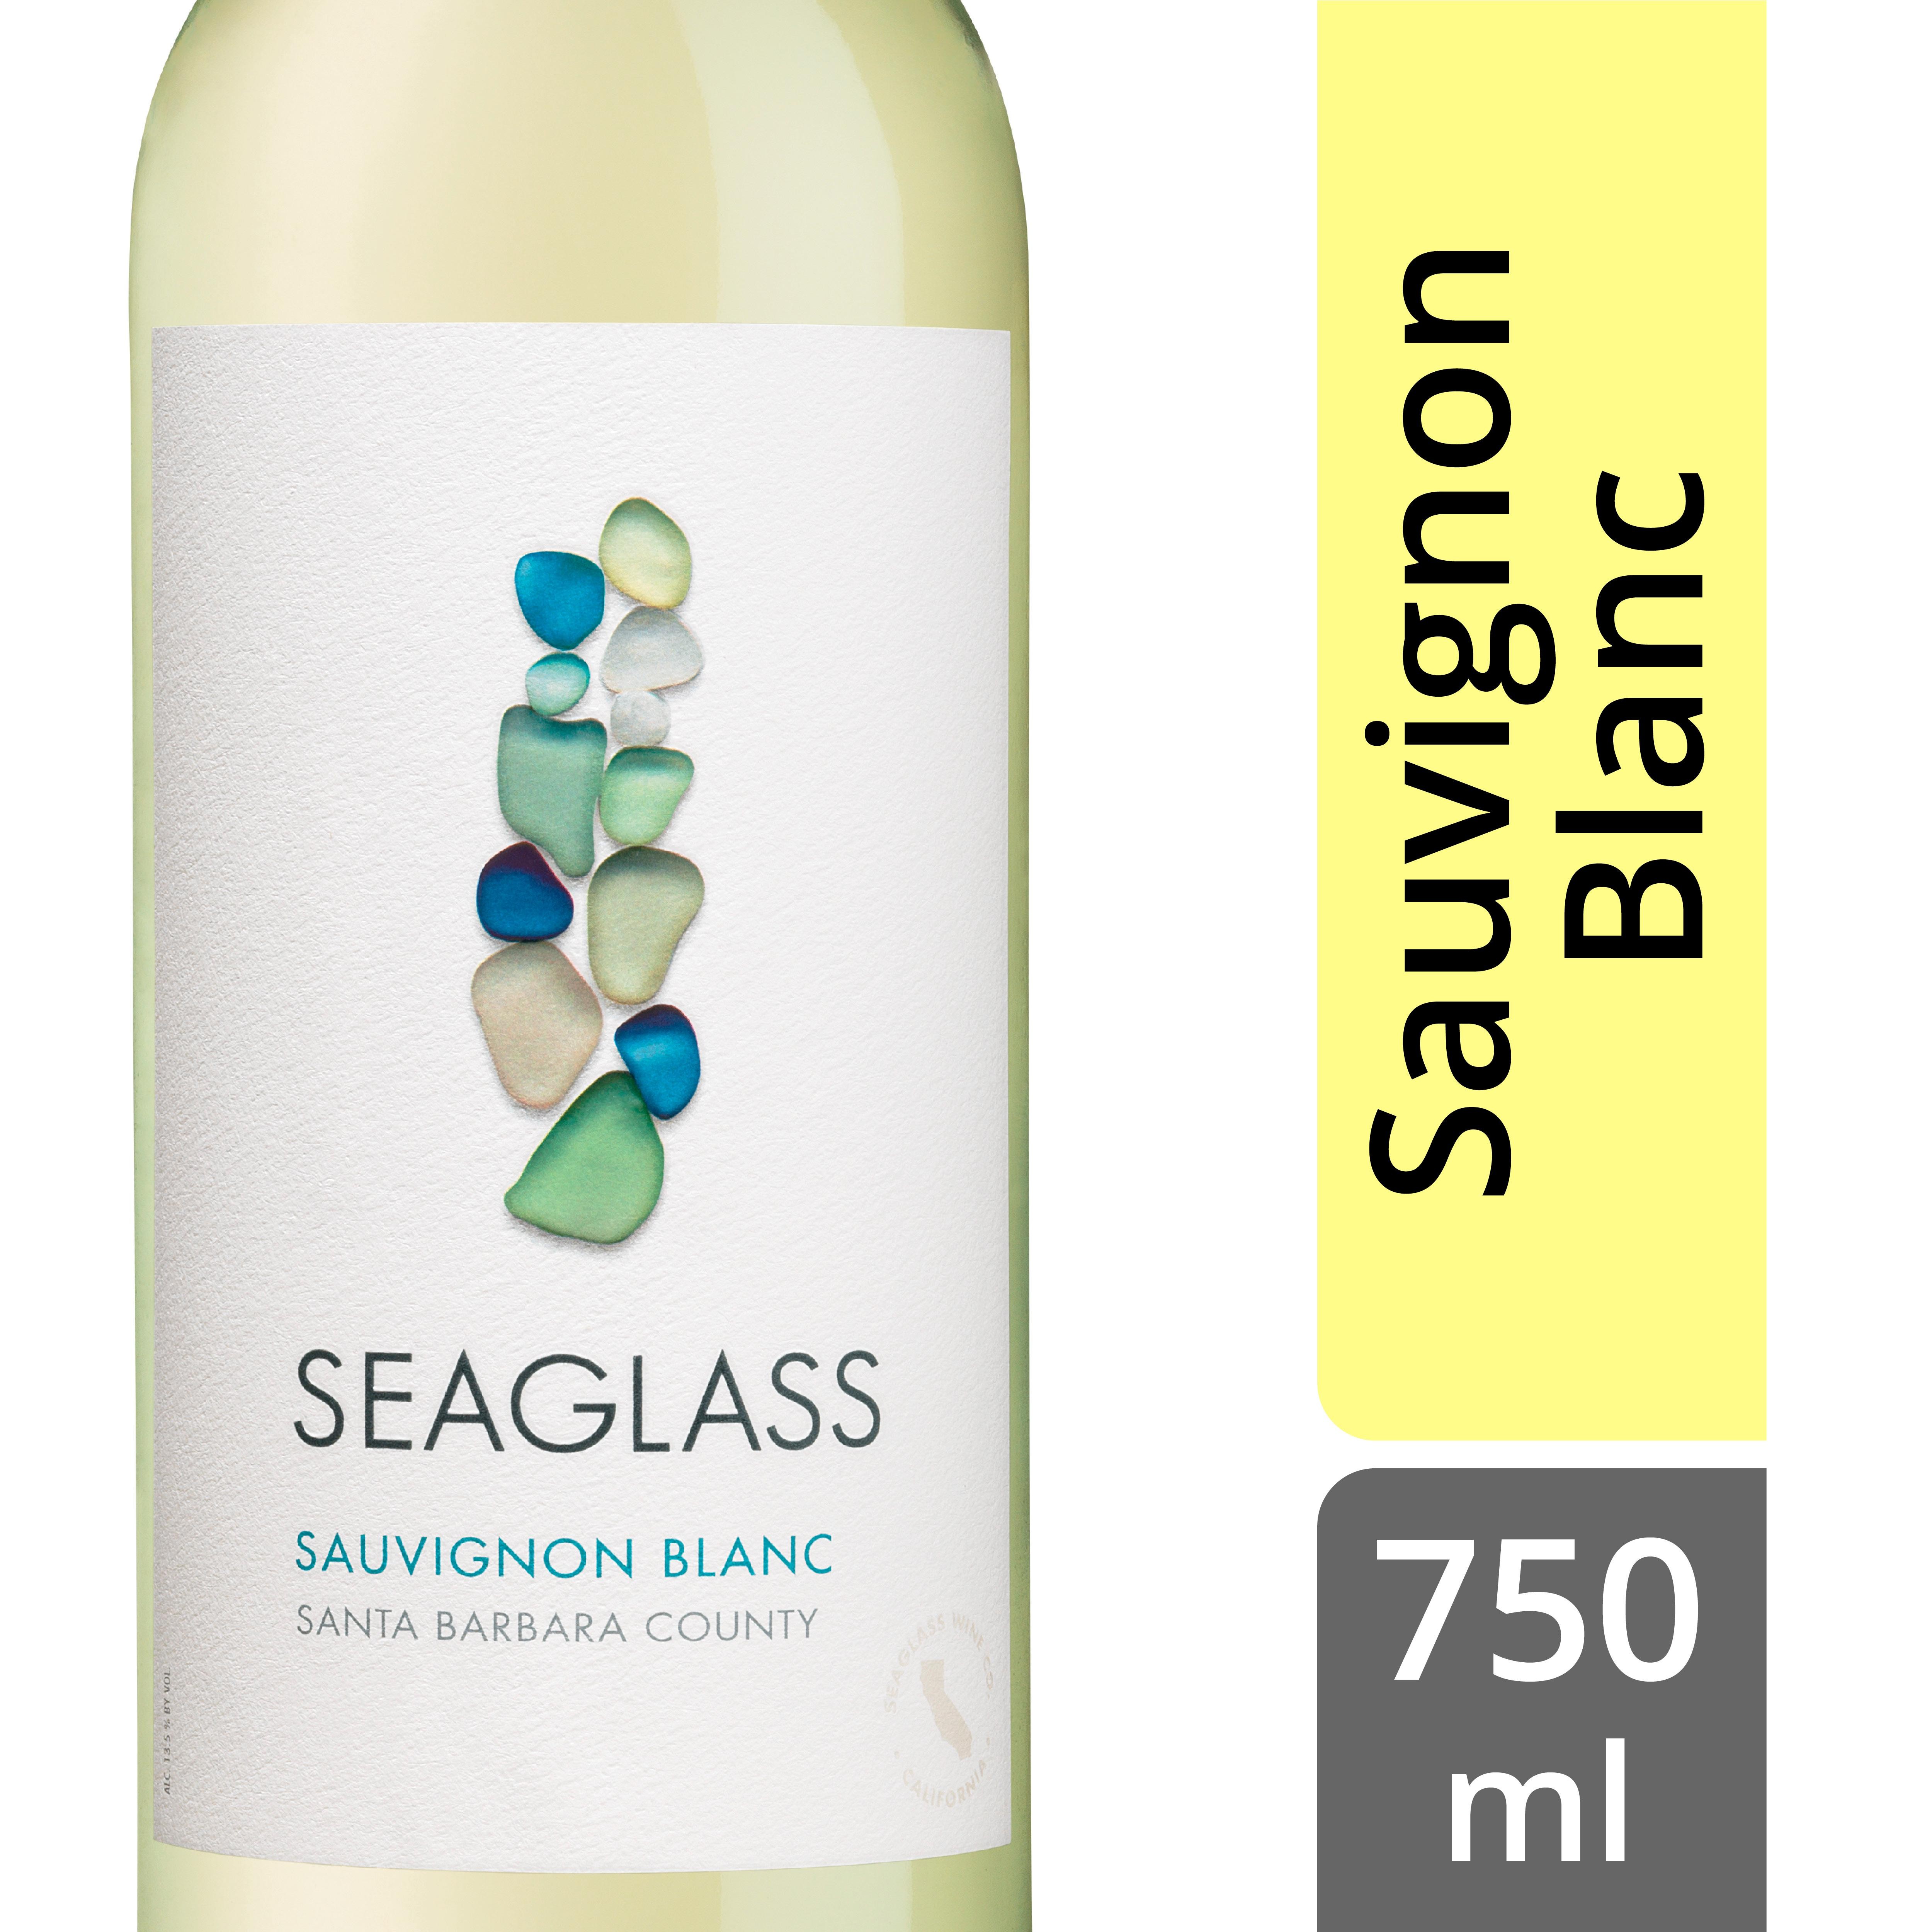 SeaGlass Sauvignon Blanc